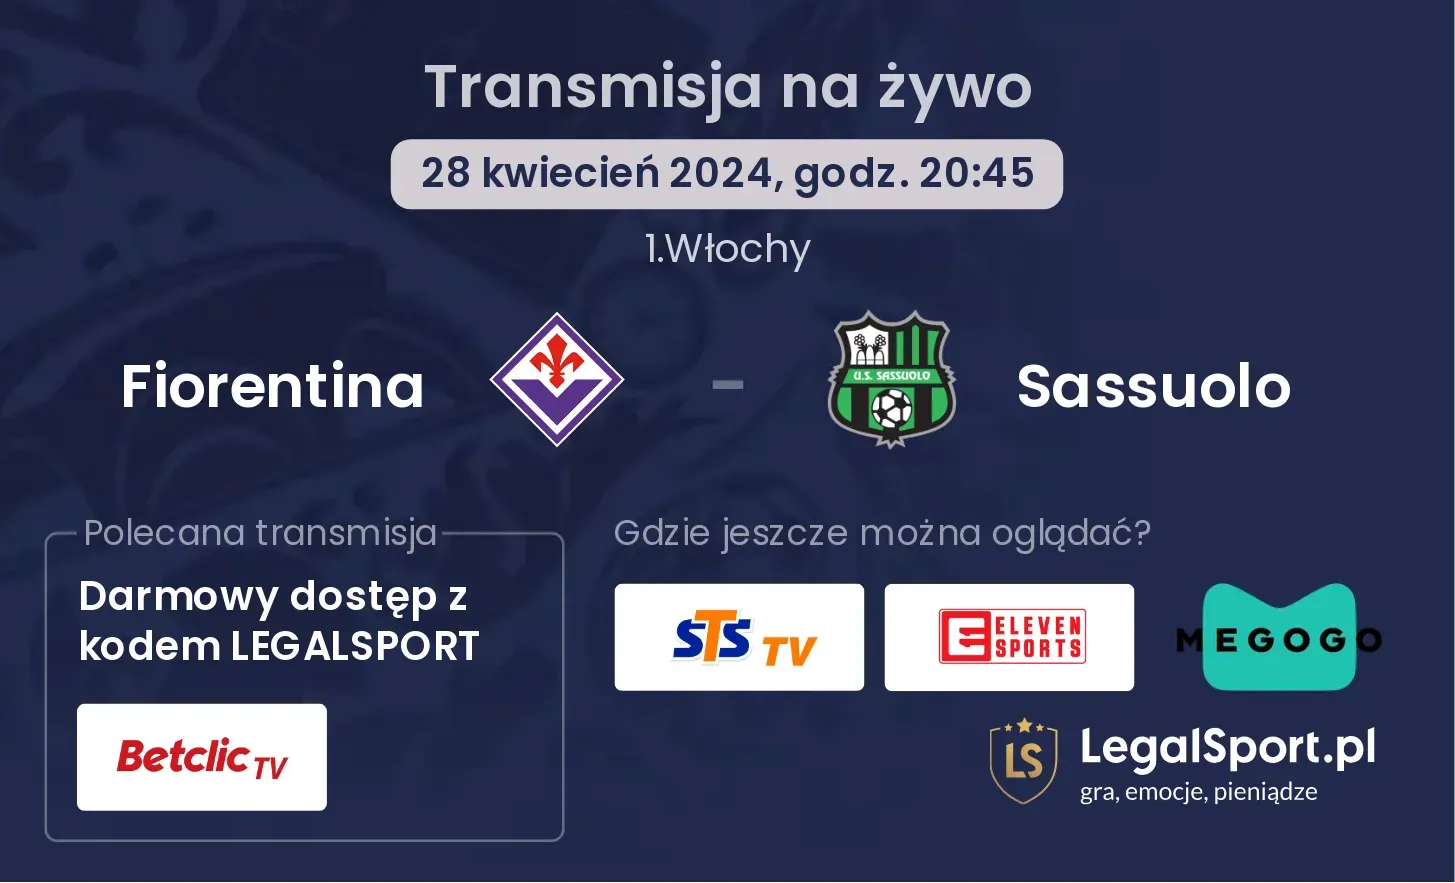 Fiorentina - Sassuolo transmisja na żywo